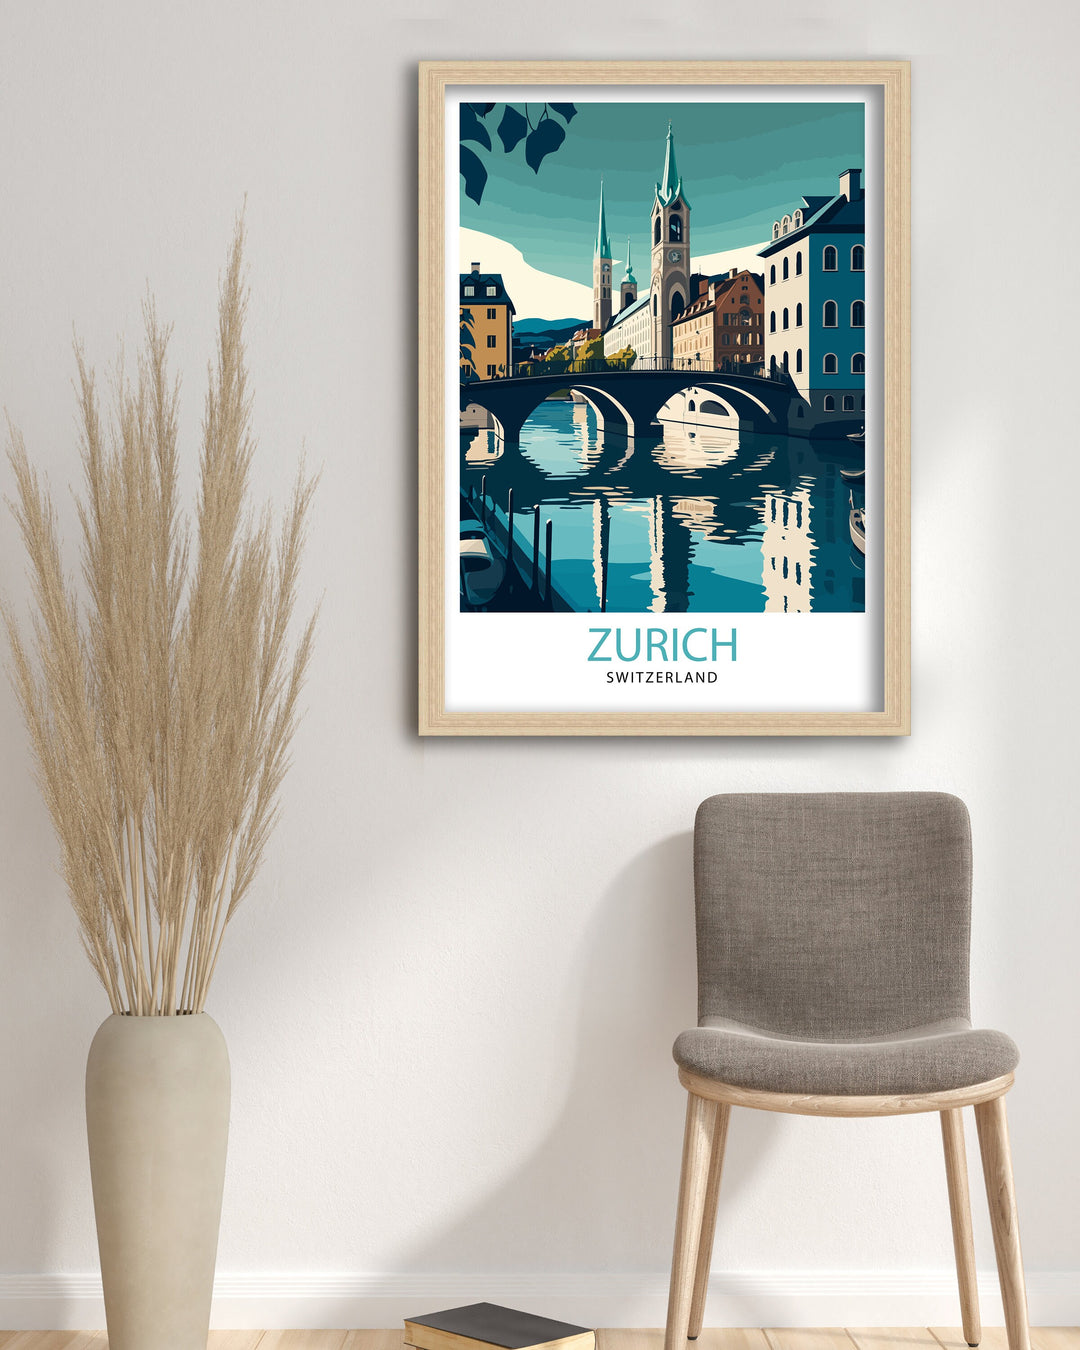 Zurich Switzerland Travel Poster Zurich Wall Decor Zurich Home Living Decor Zurich Switzerland Illustration Travel Poster Gift For Zurich